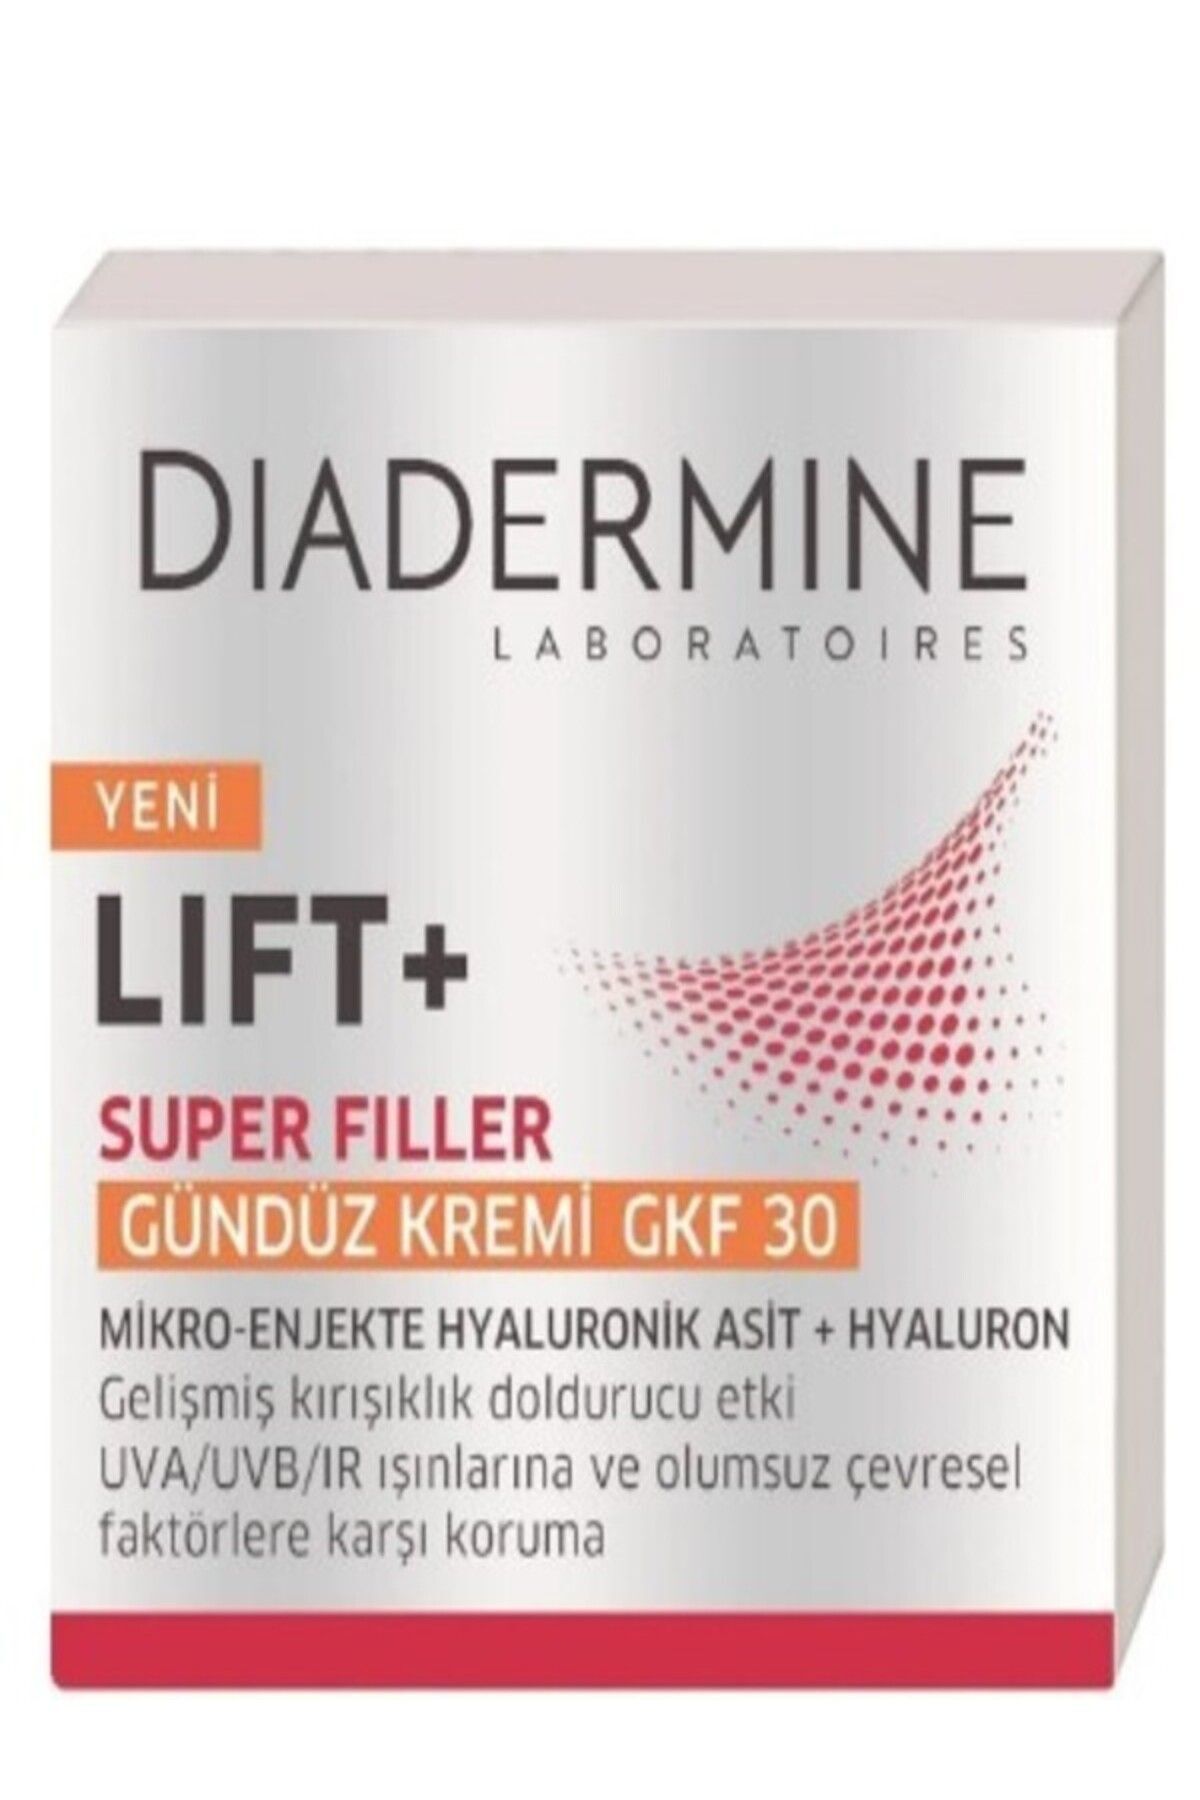 Diadermine Gündüz Kremi Liftplus Superfiller 50 ml